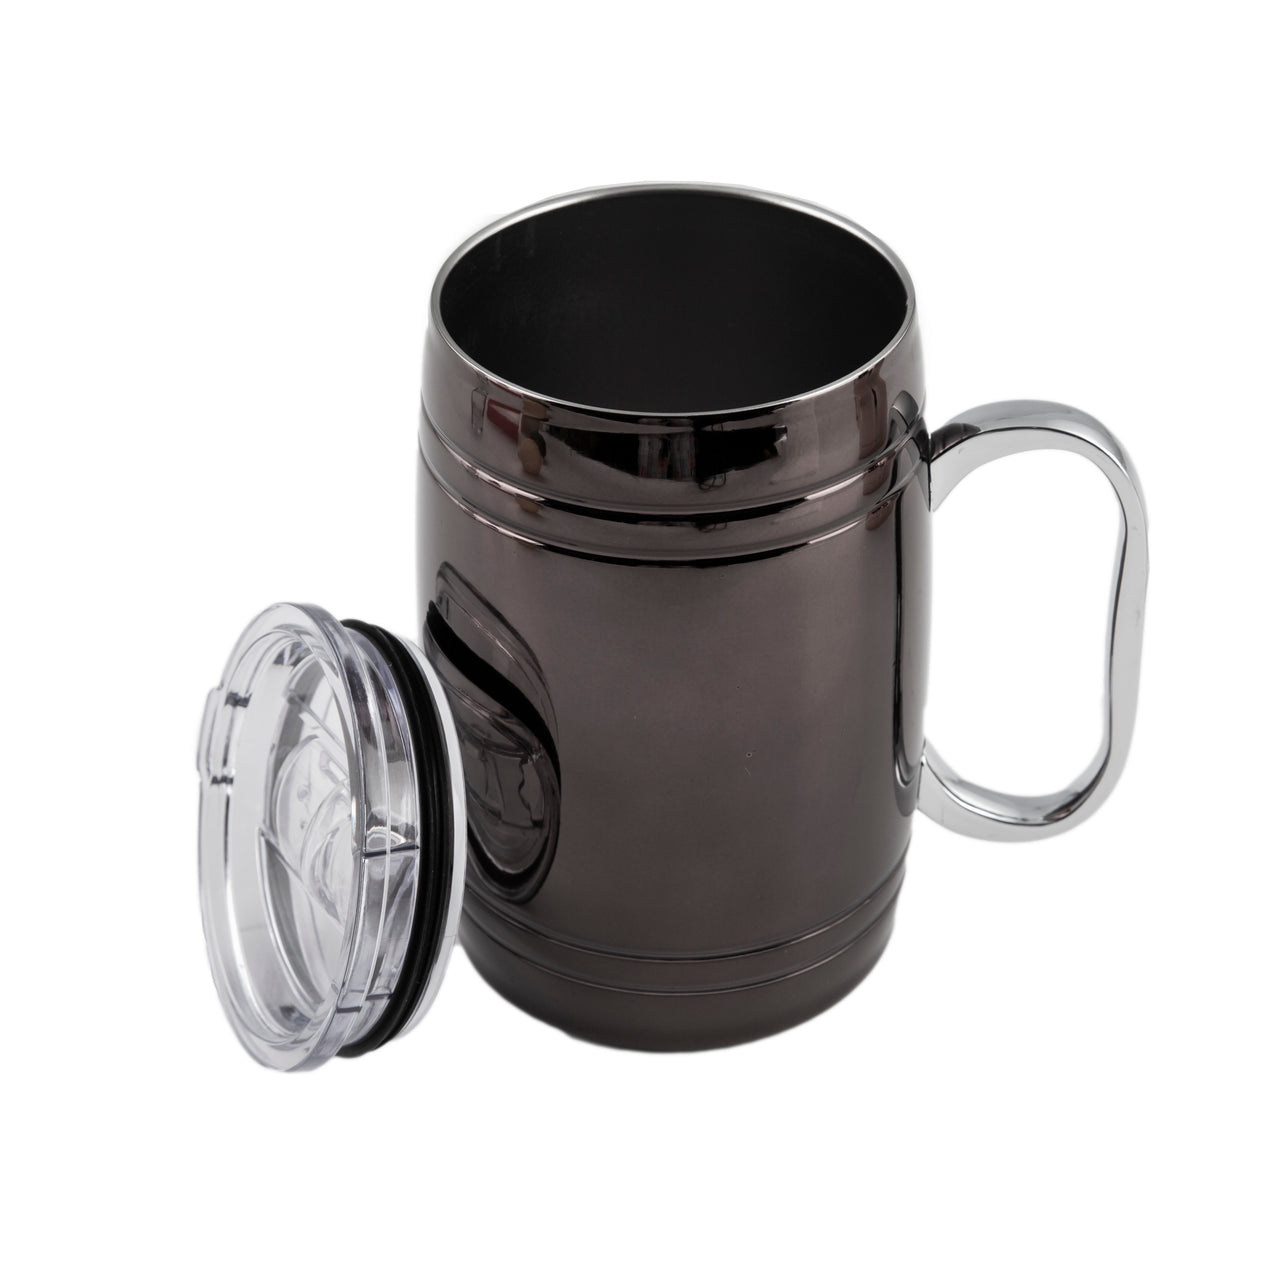 20 oz. Insulated Travel Mug with Handle